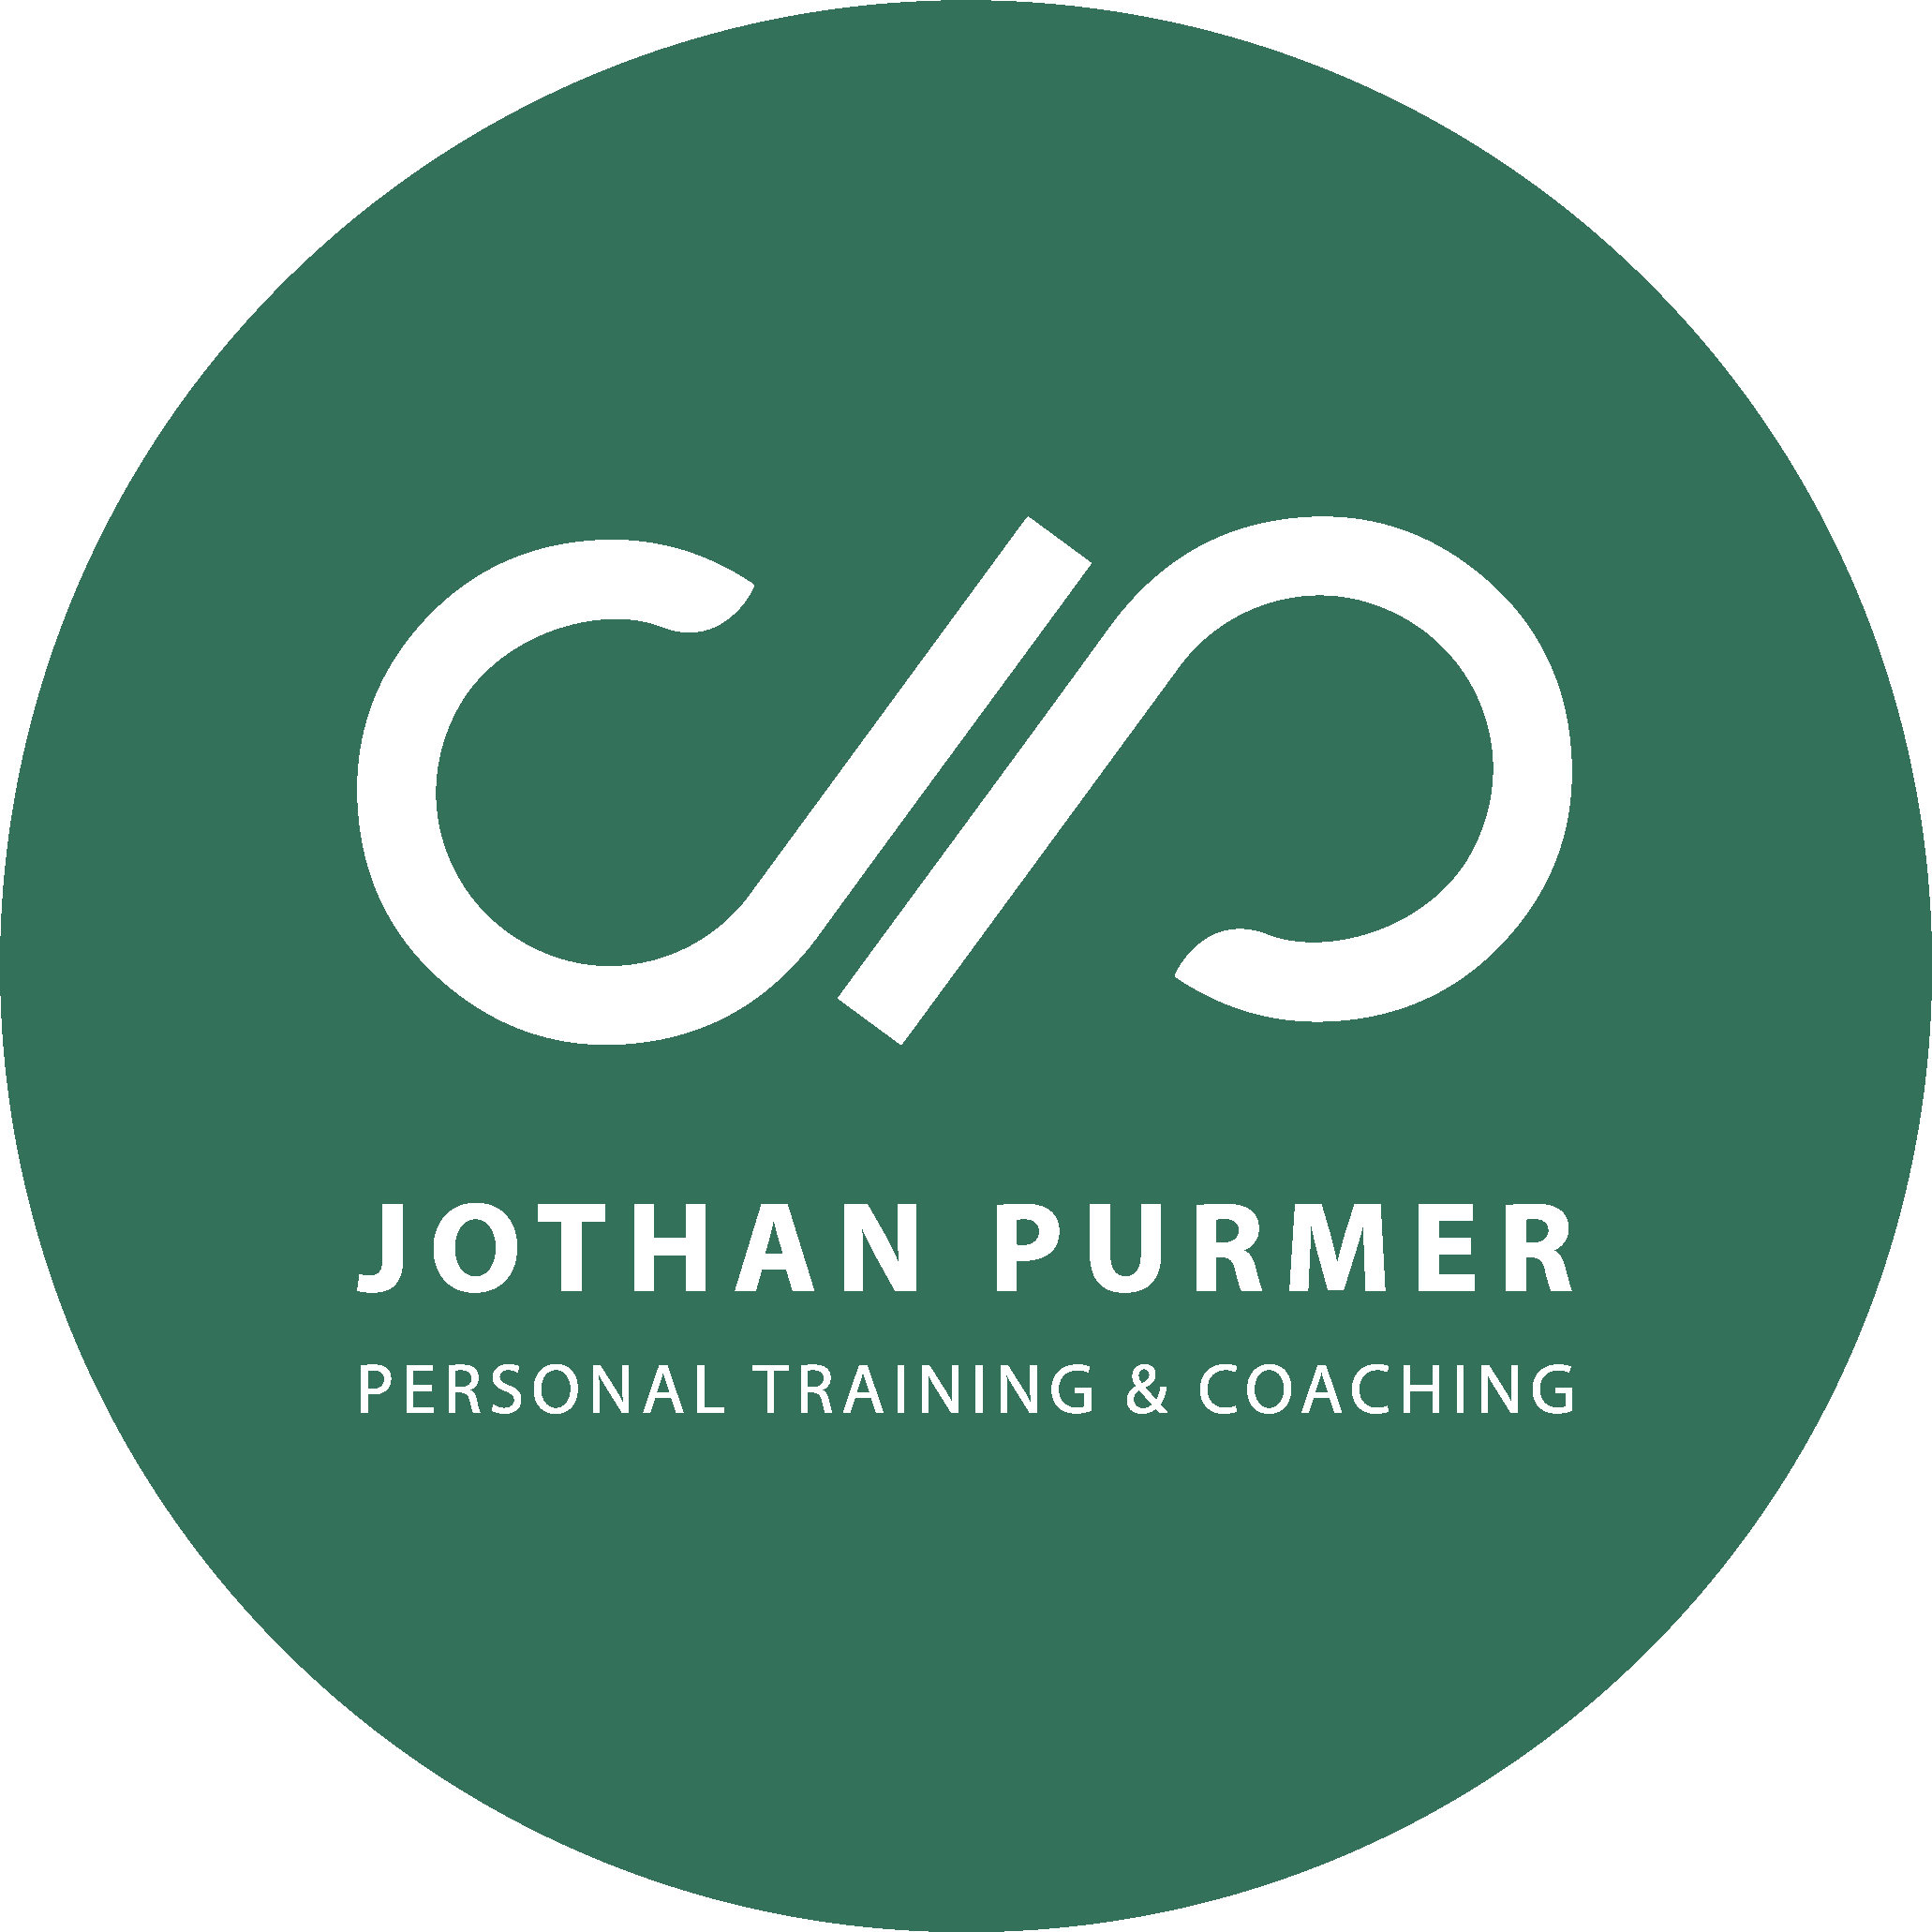 Jothan Purmer, Personal Training & Coaching